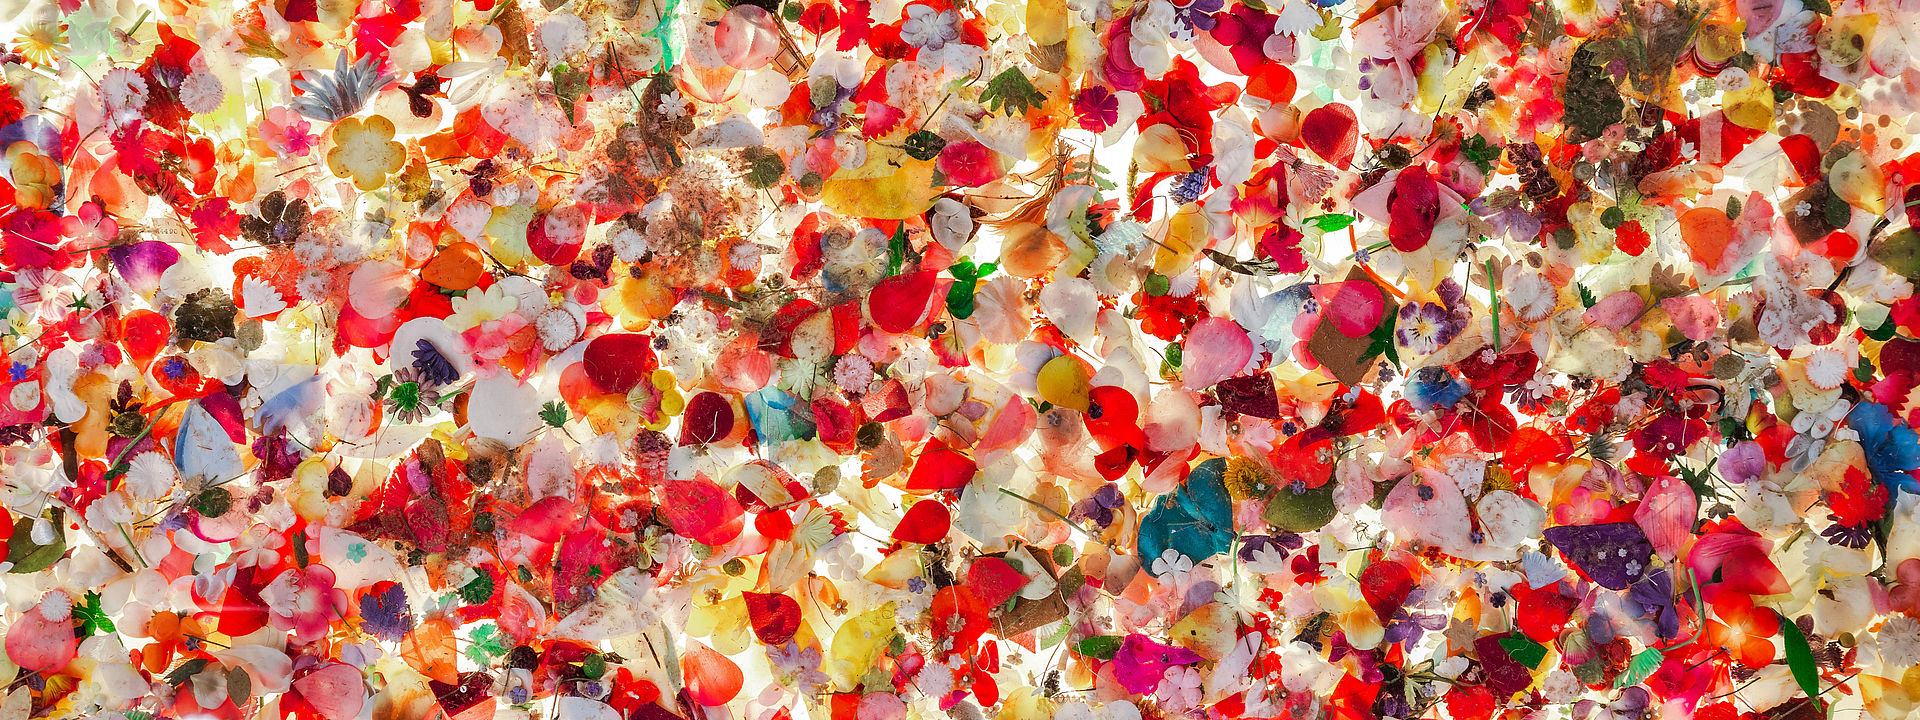 Ein buntes Blumenmeer aus vielen Seidenblumen und -blättern.